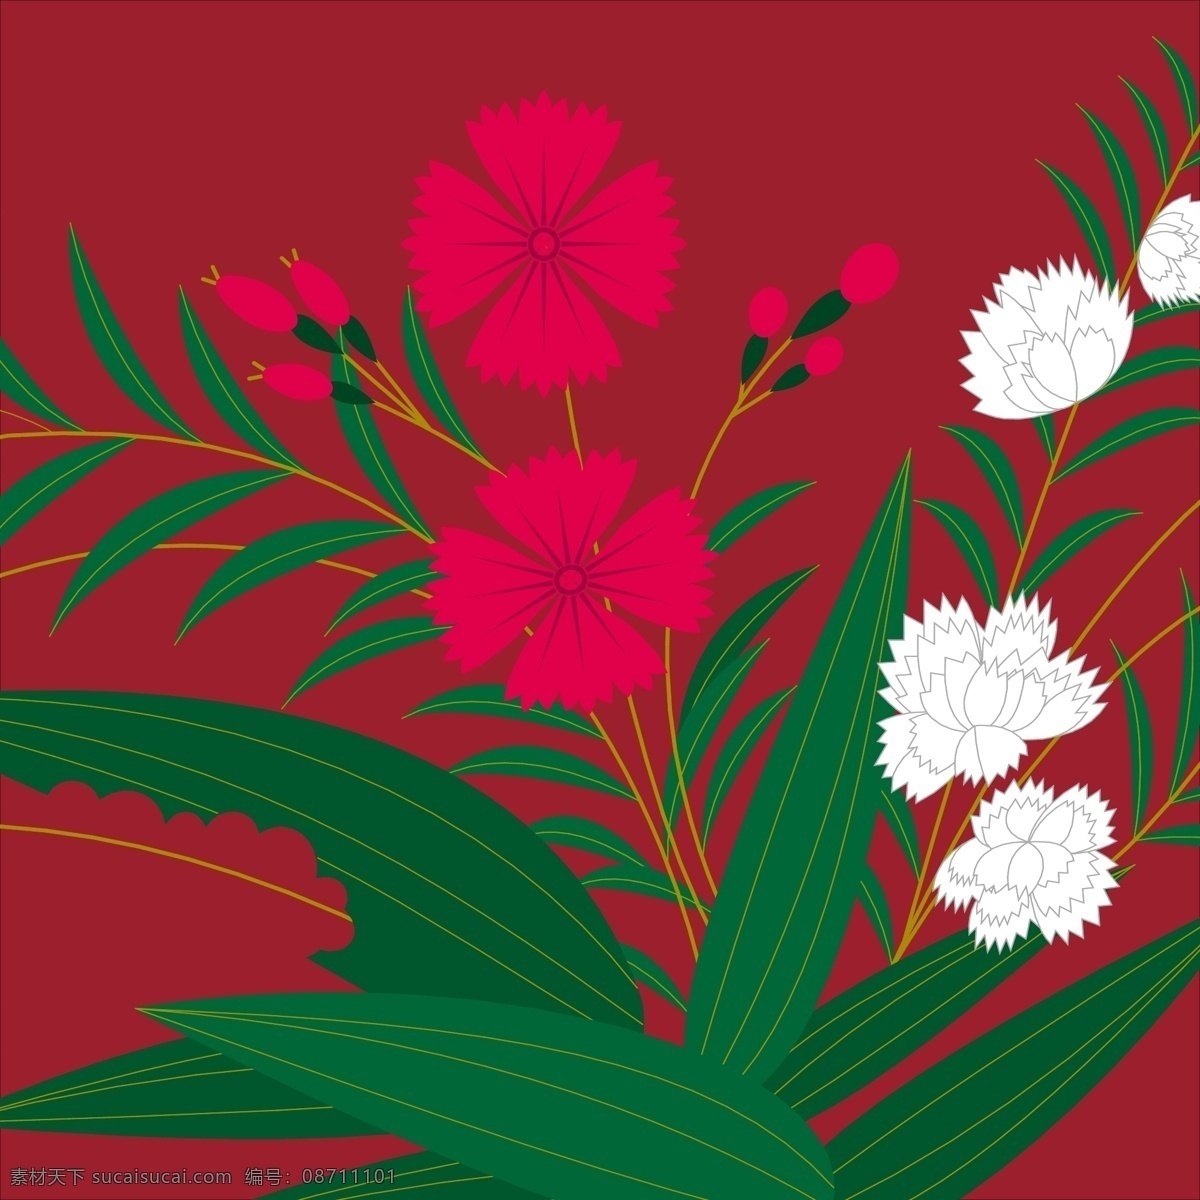 红色 花草 纹理 图 设计素材 设计元素 矢量素材 花朵 树叶 白色朵 花朵纹理图